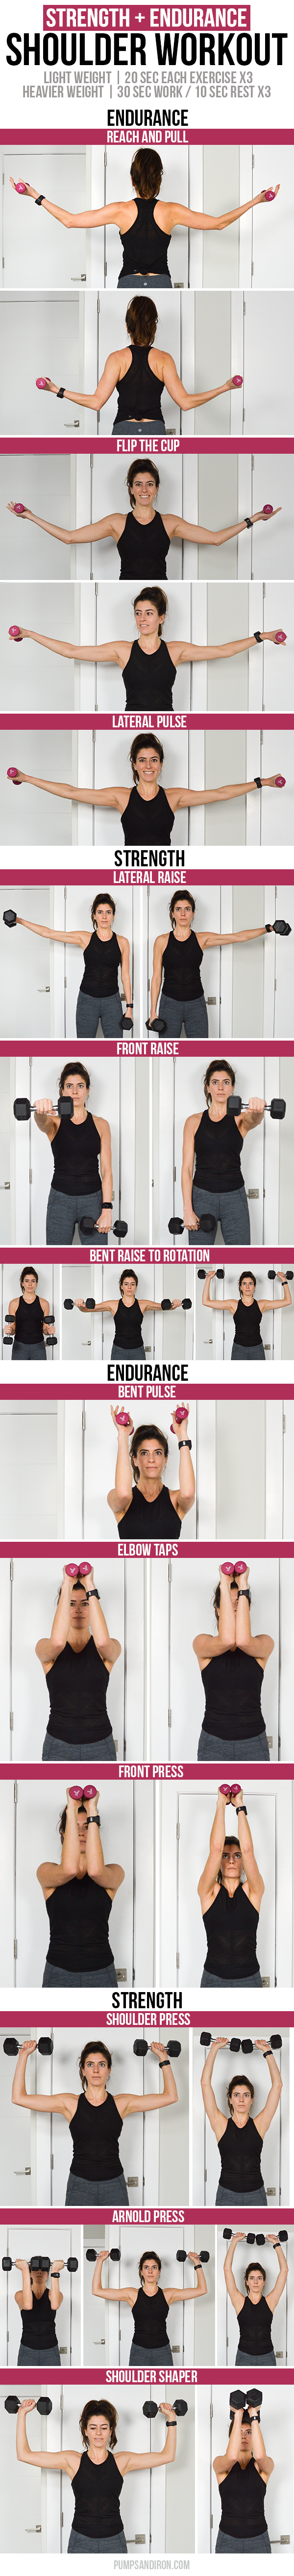 Shoulder Workout: Endurance Burnout + Strength Exercises